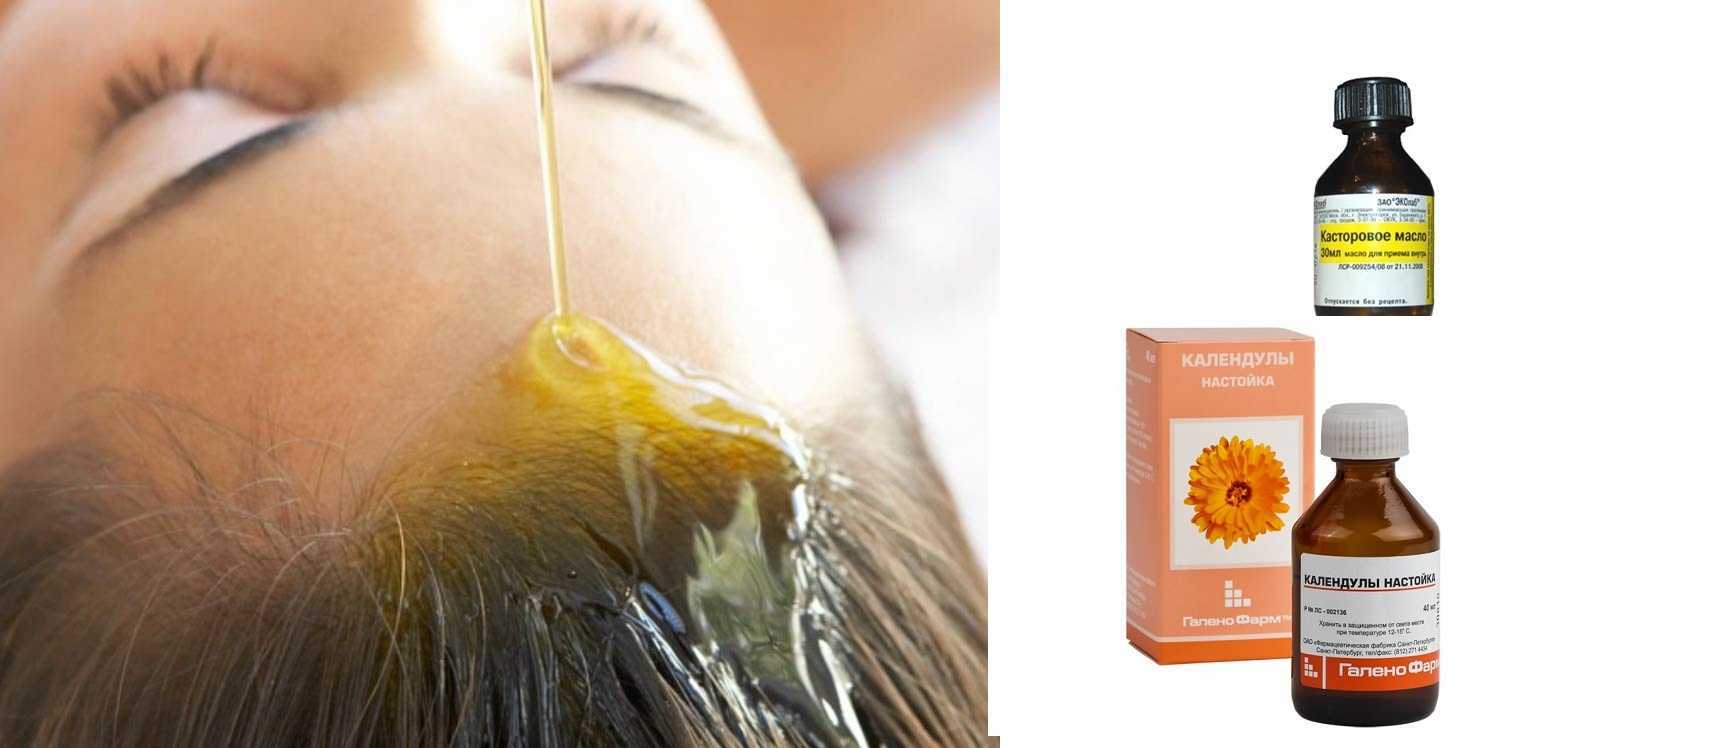 Касторовое масло для волос обладает уникальными свойствами Каковы отзывы об использовании масок на ночь Как лечить ресницы касторкой